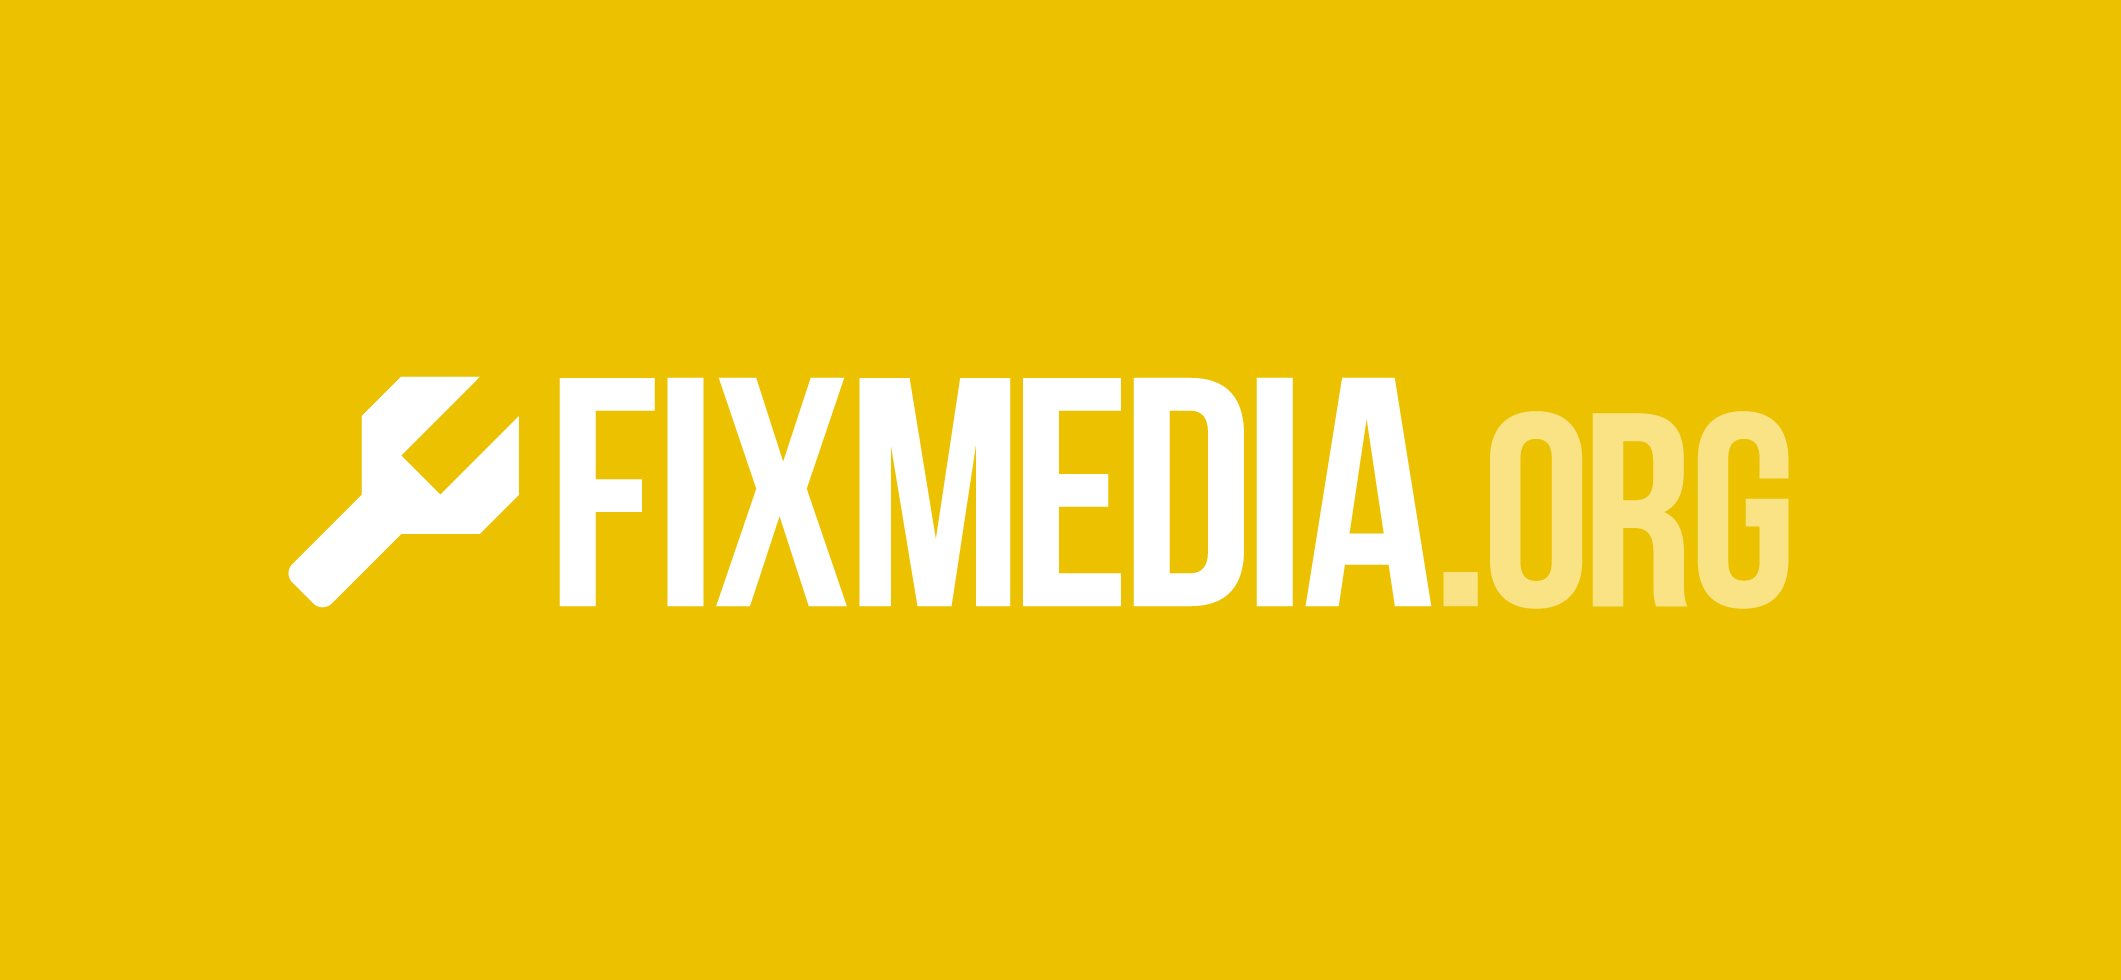 Fixmedia.org, mejora las noticias's header image